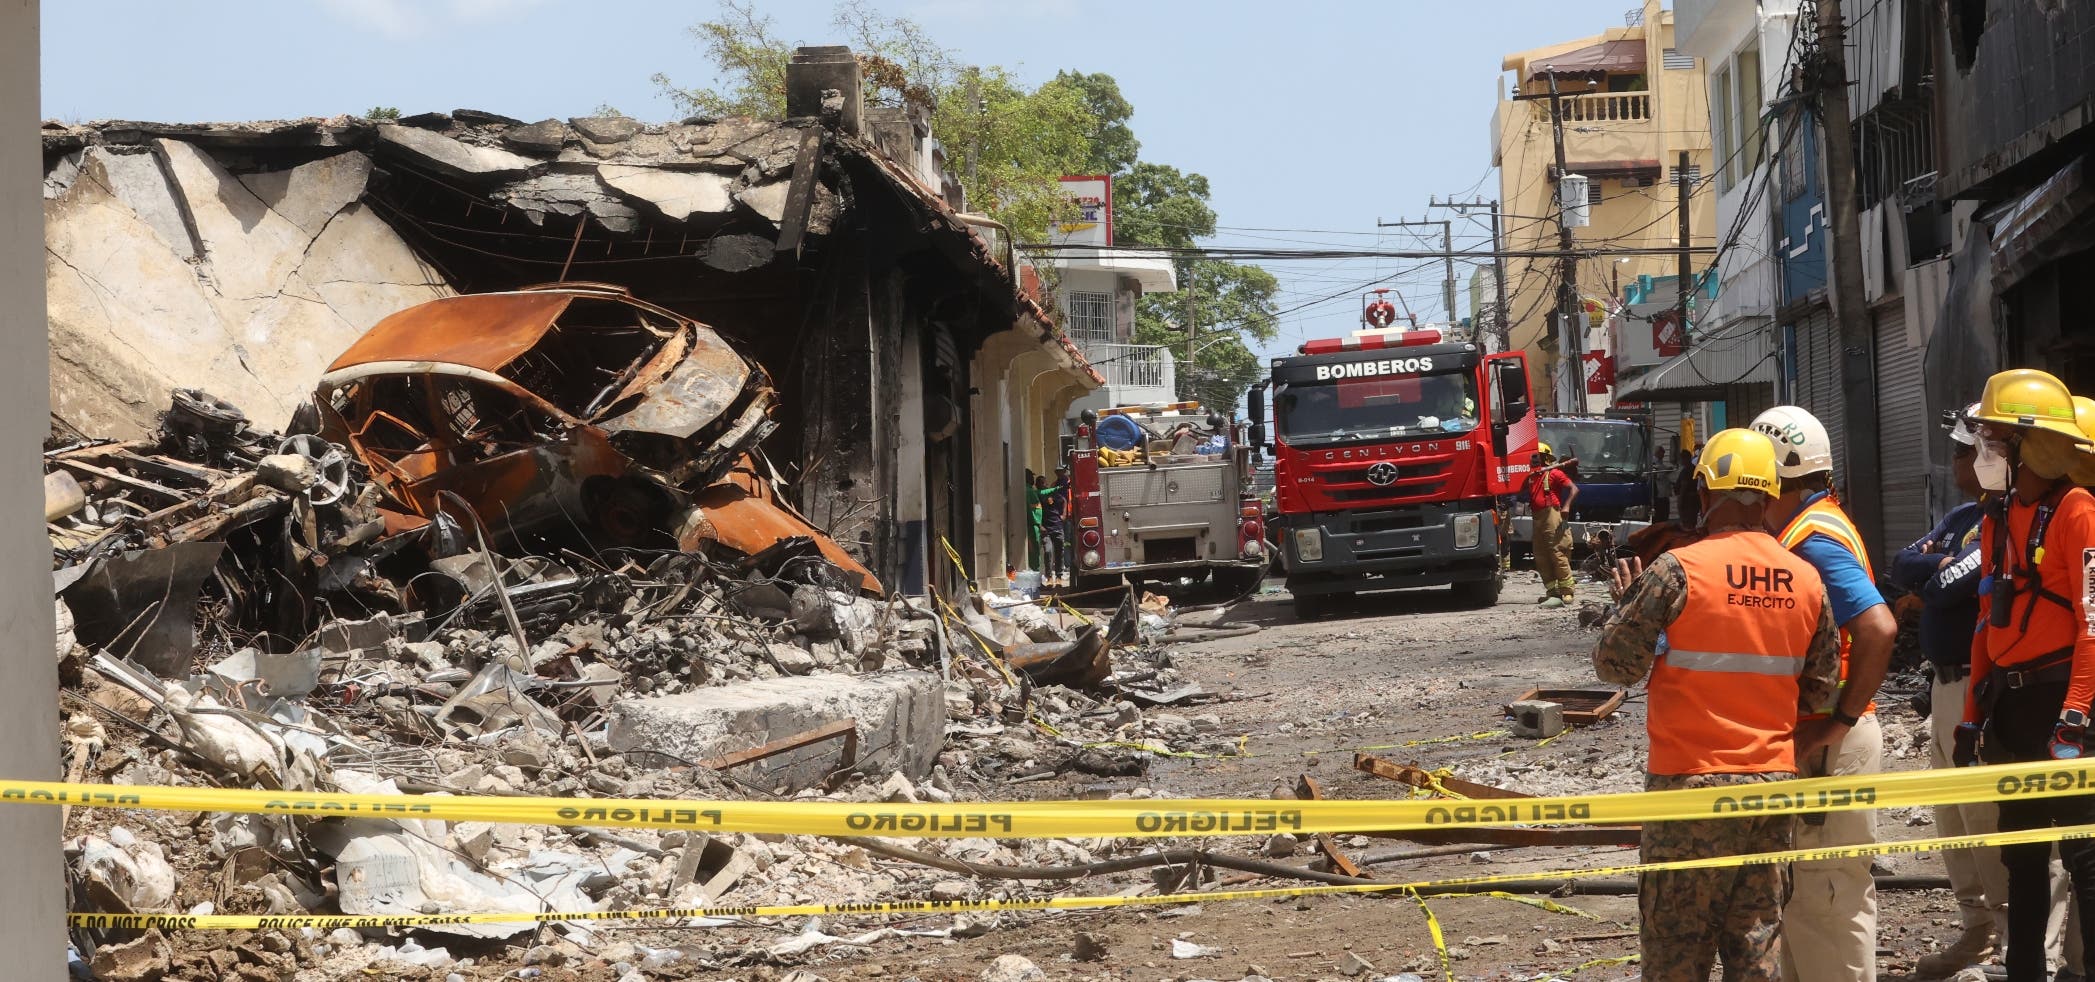 Cuerpos víctimas de explosión en San Cristóbal podrían tardar de 2 a 3 meses para ser identificados